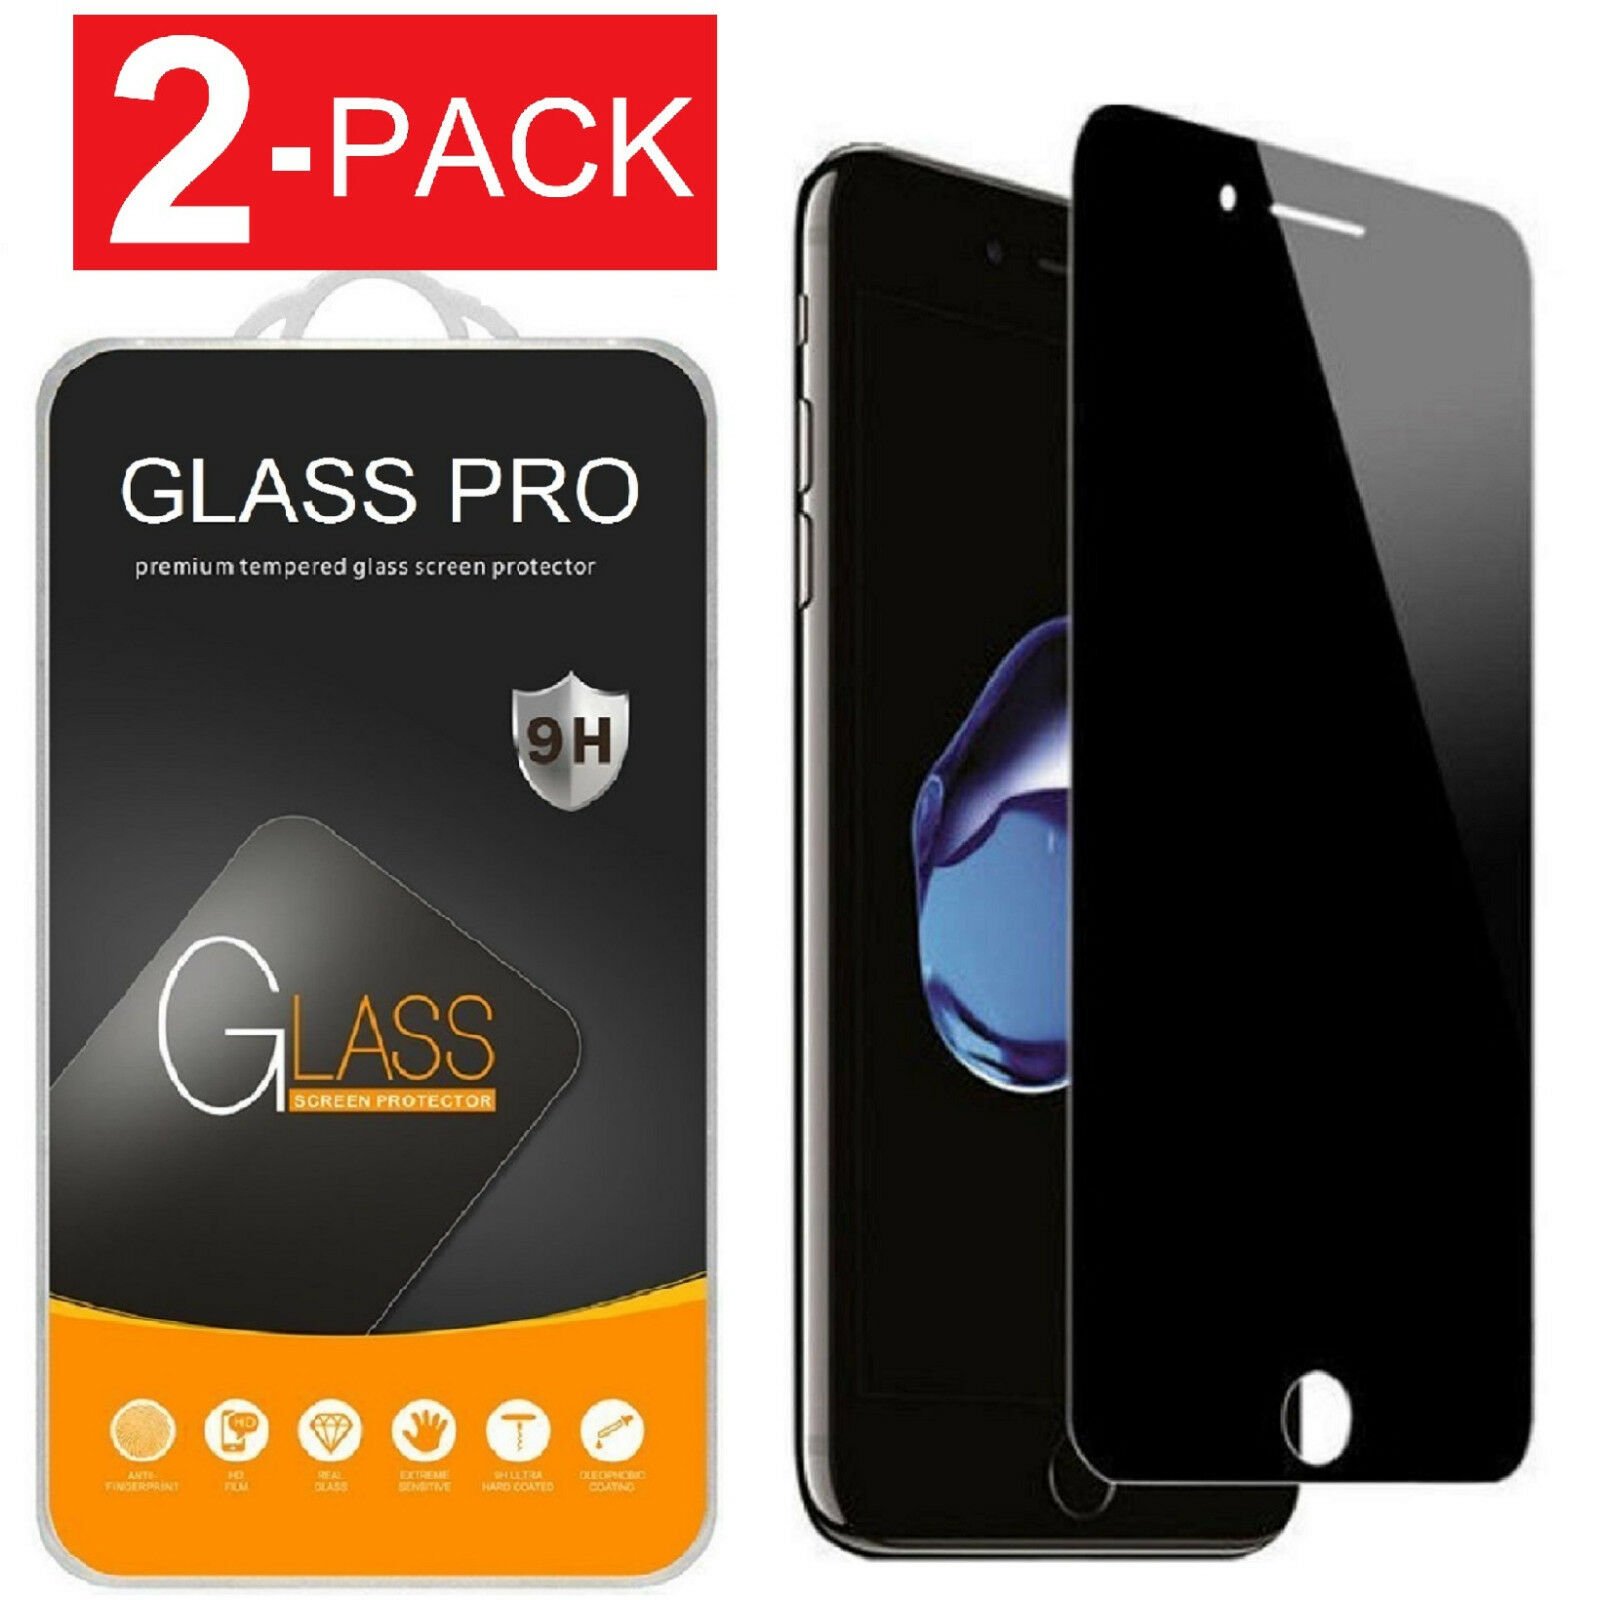 Protector de pantalla de vidrio templado Calidad para Samsung Galaxy S7 Apple iPhone XR XS